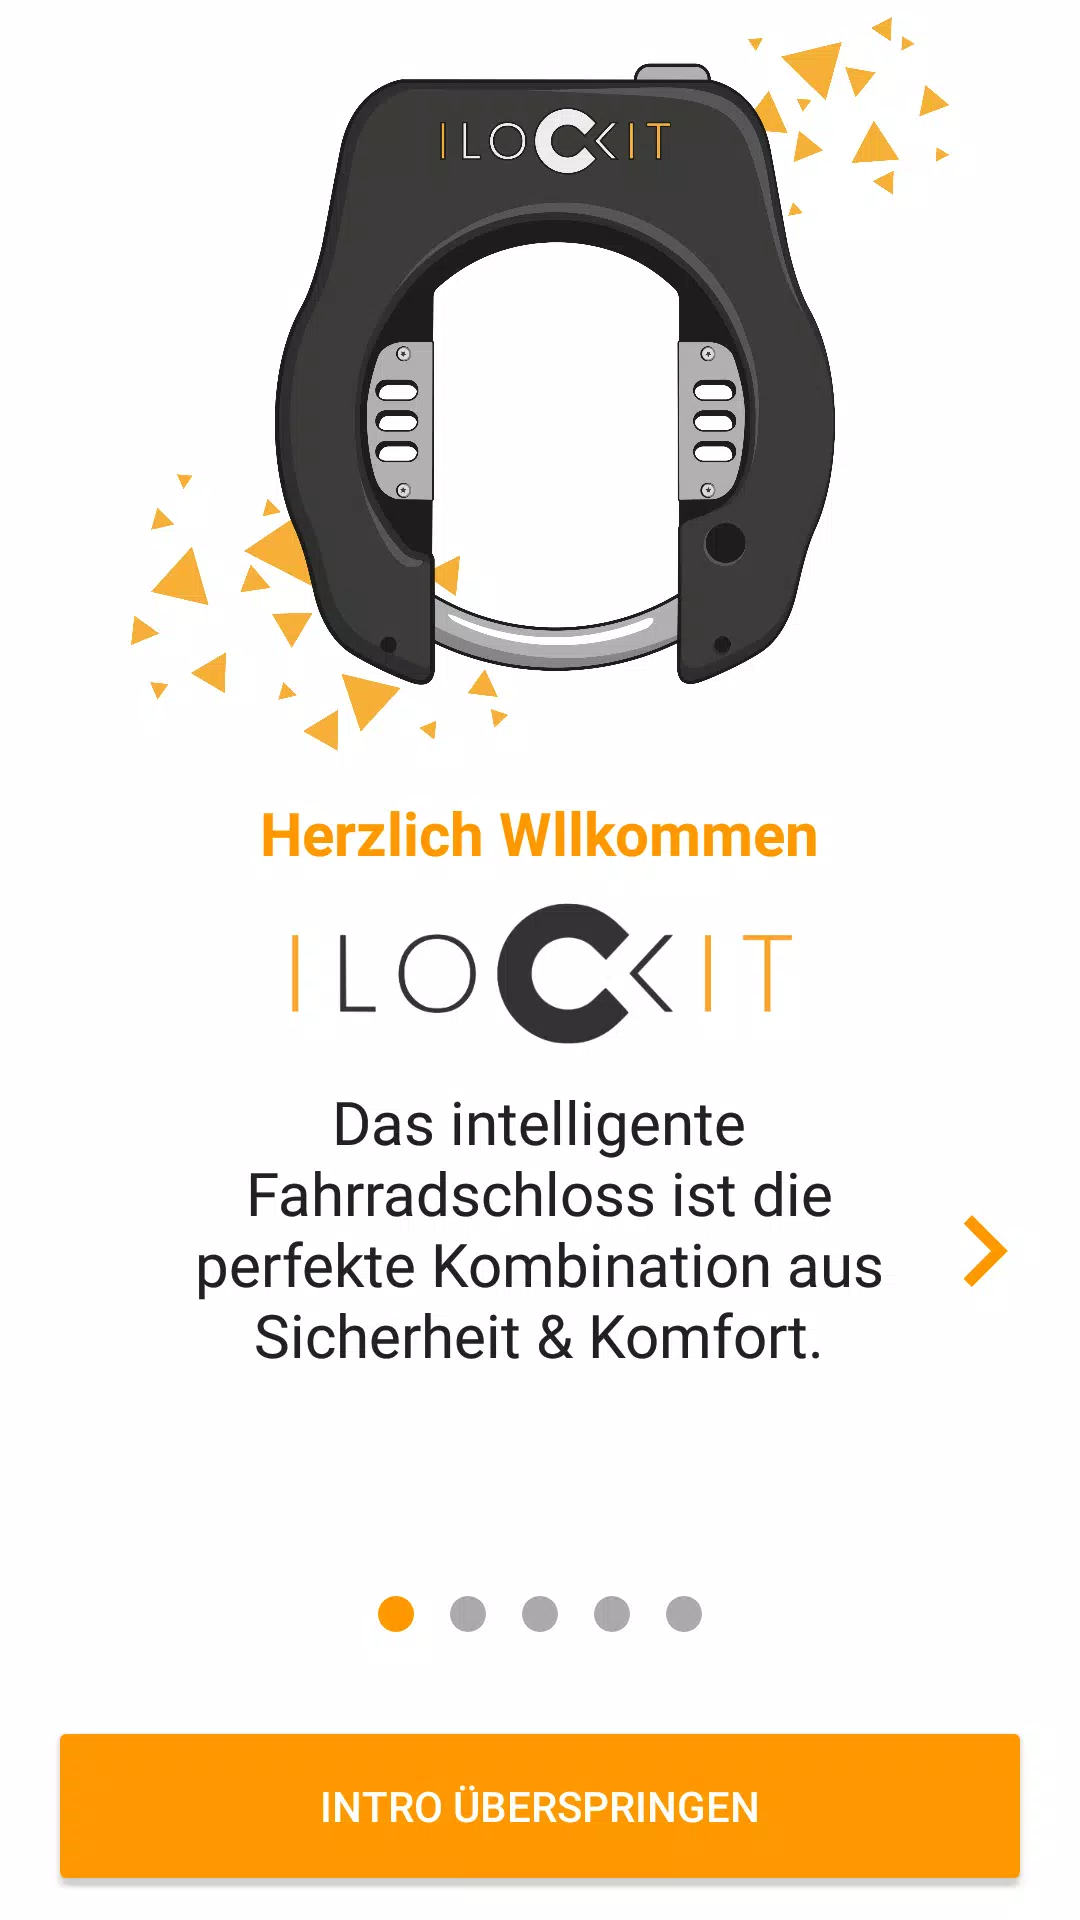 I LOCK IT - Fahrradschloss App APK für Android herunterladen